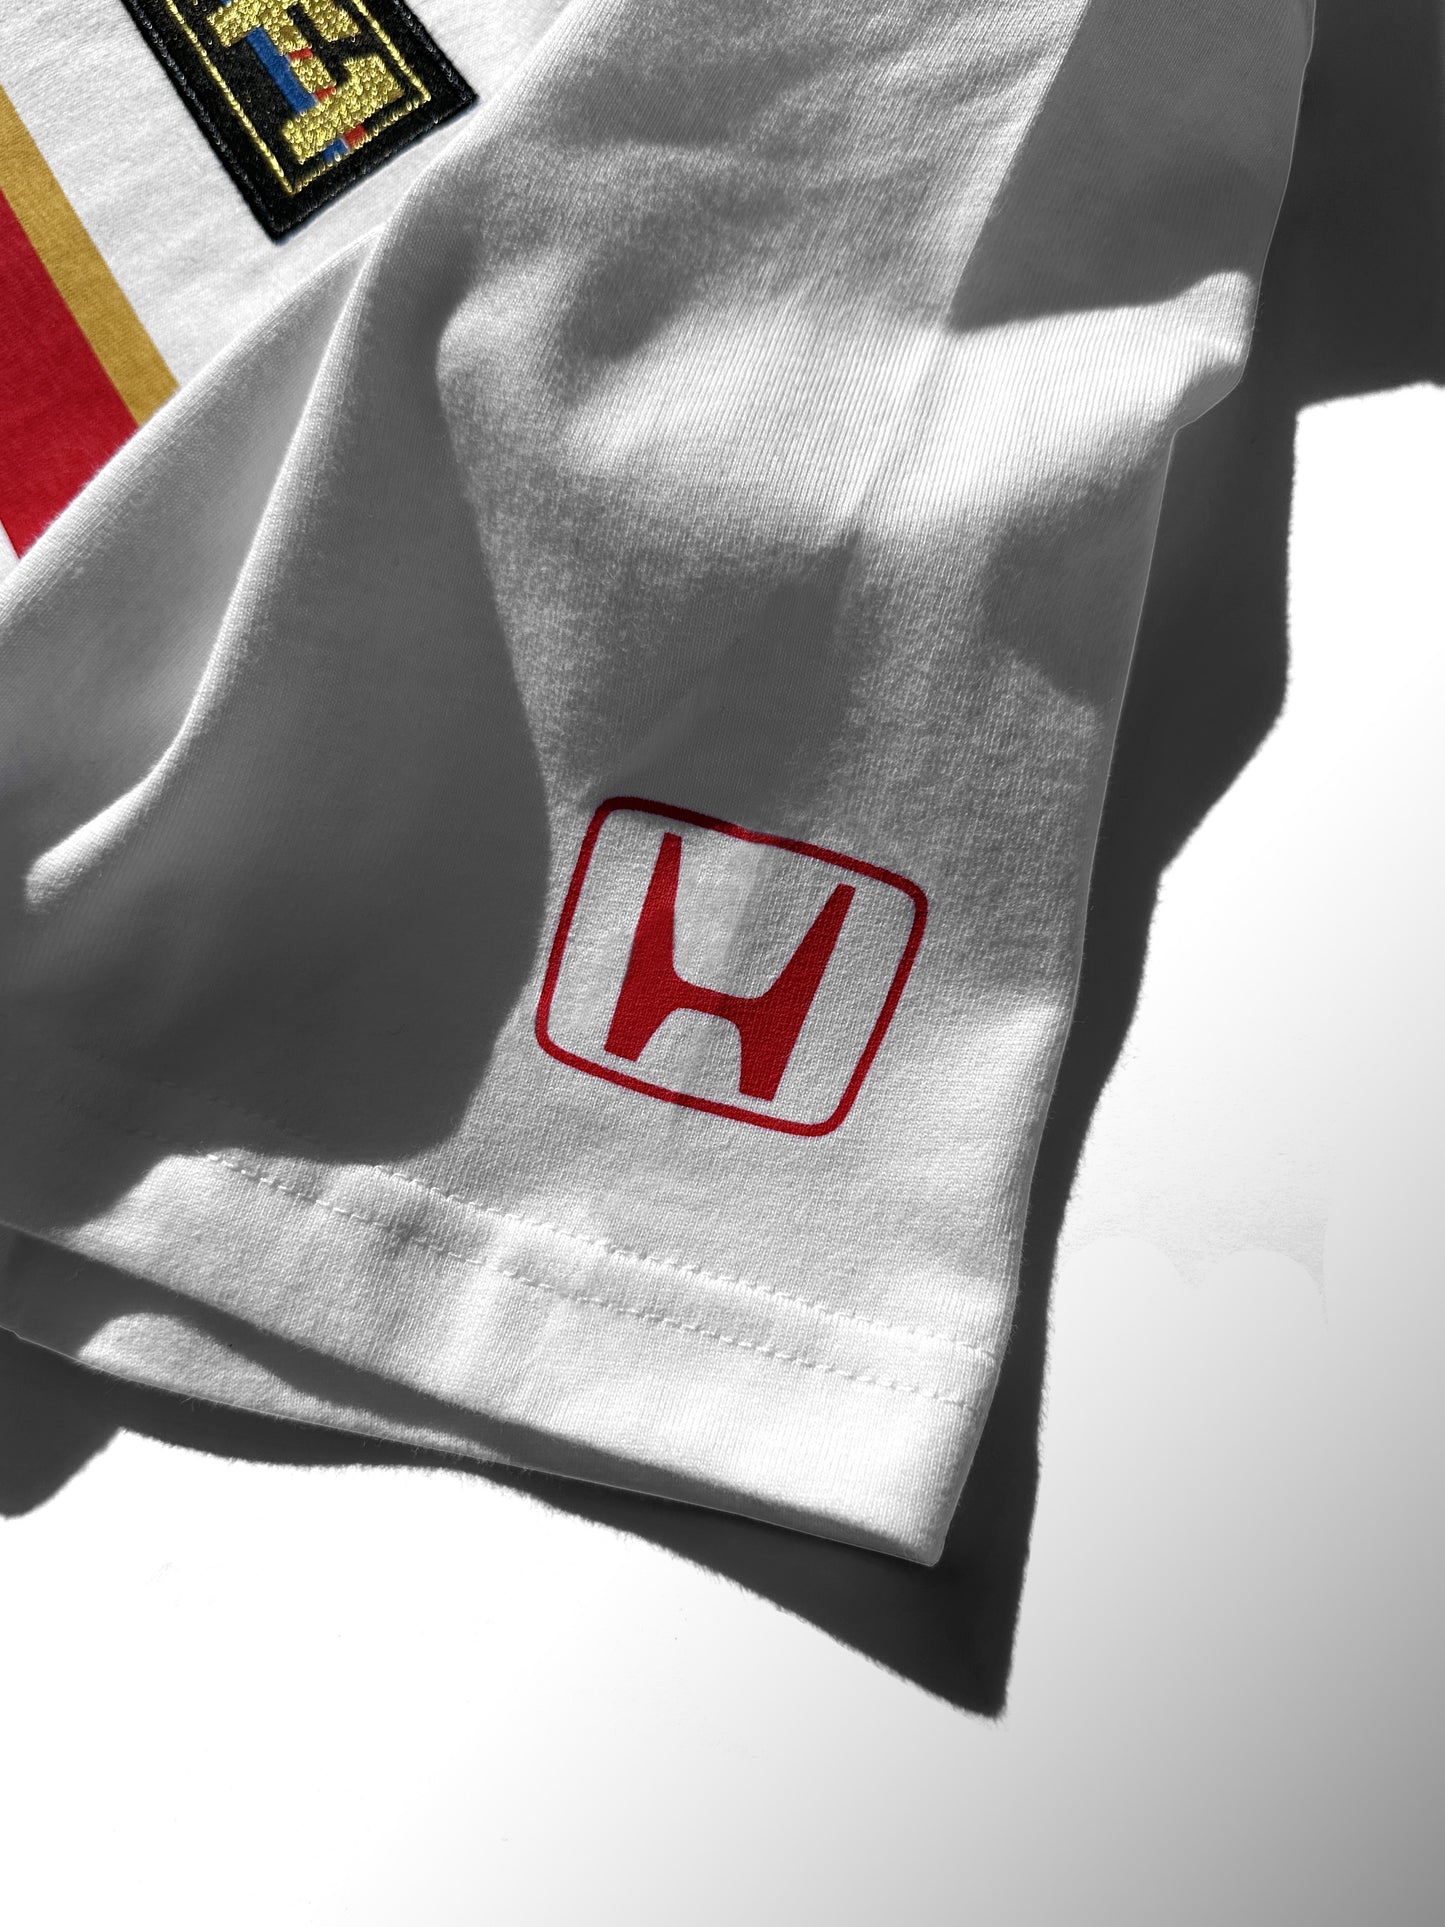 1986 Honda F1 Team Tee (white)